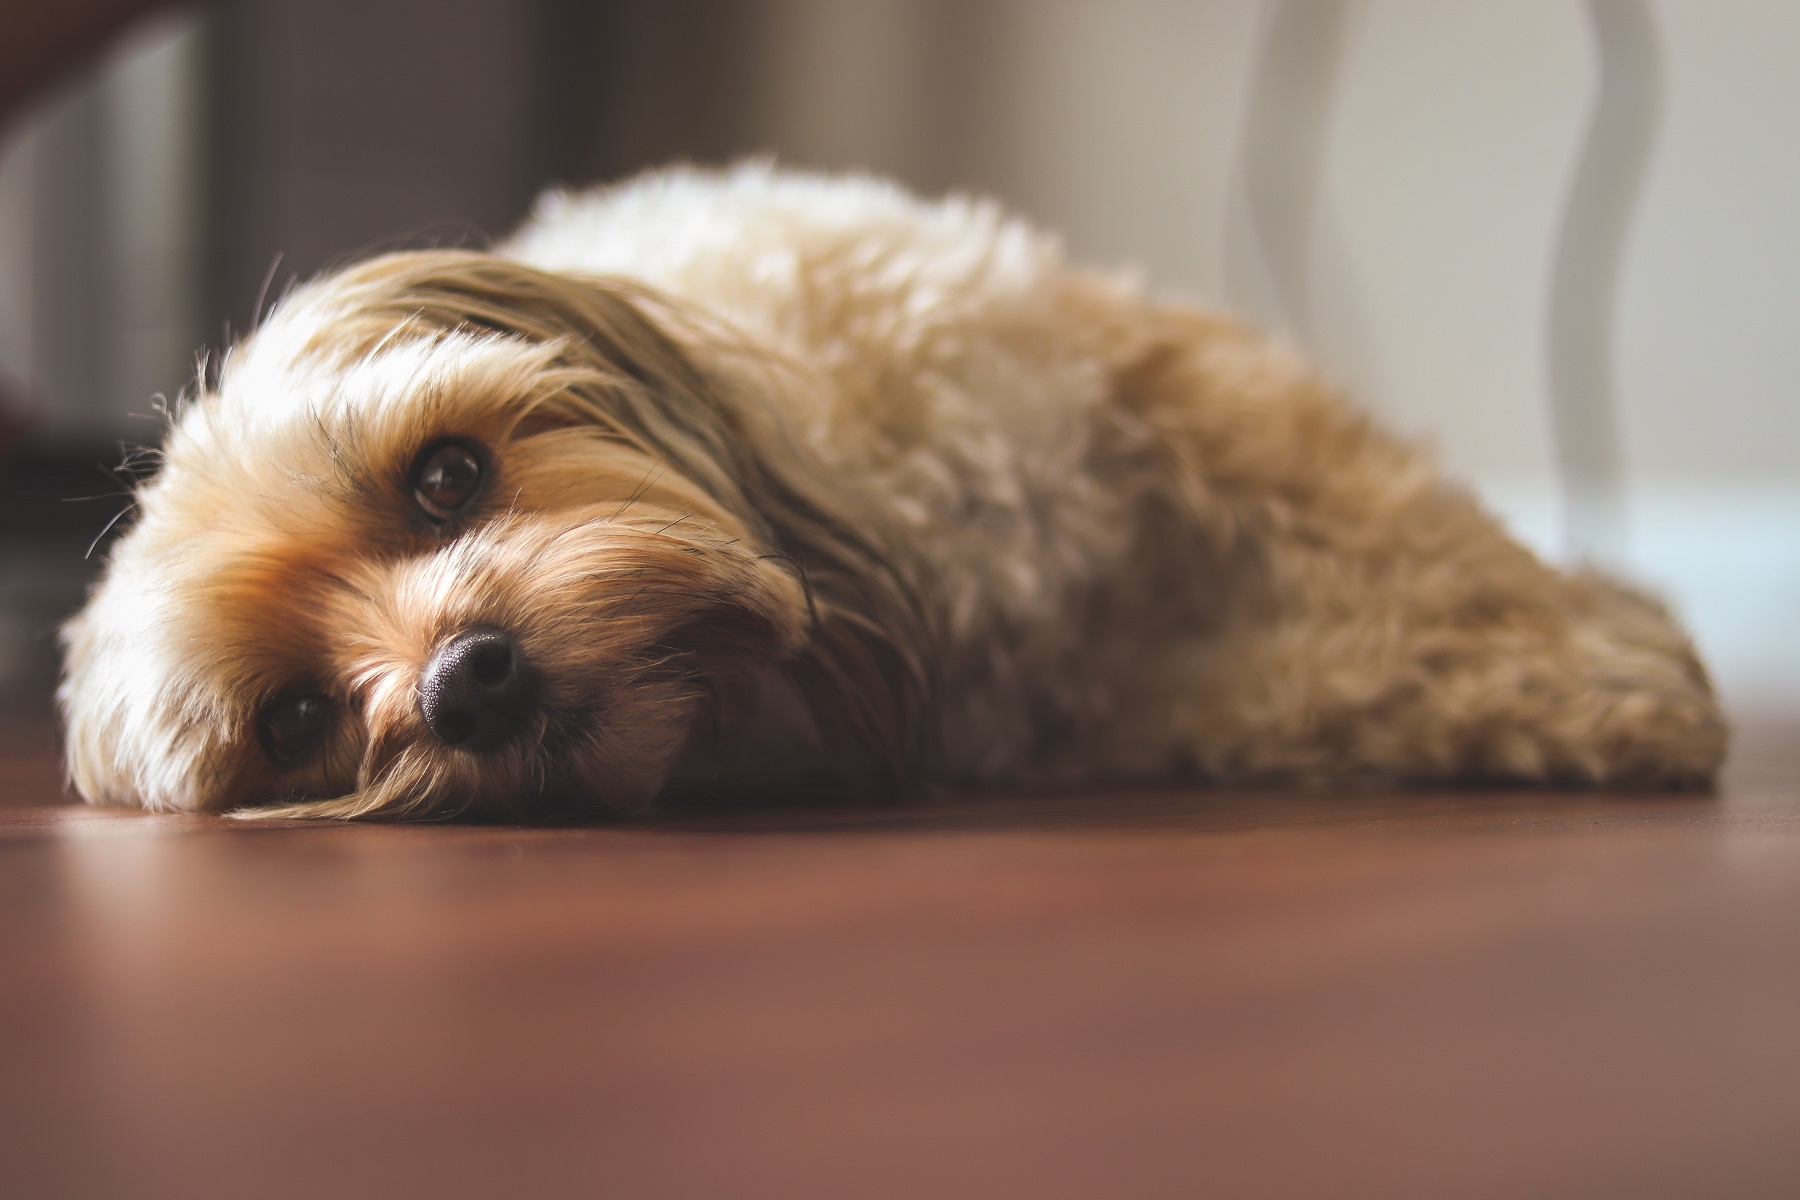 grado ganancia Quemar Qué hacer si mi perro vomita? Causas y Soluciones | Gudog